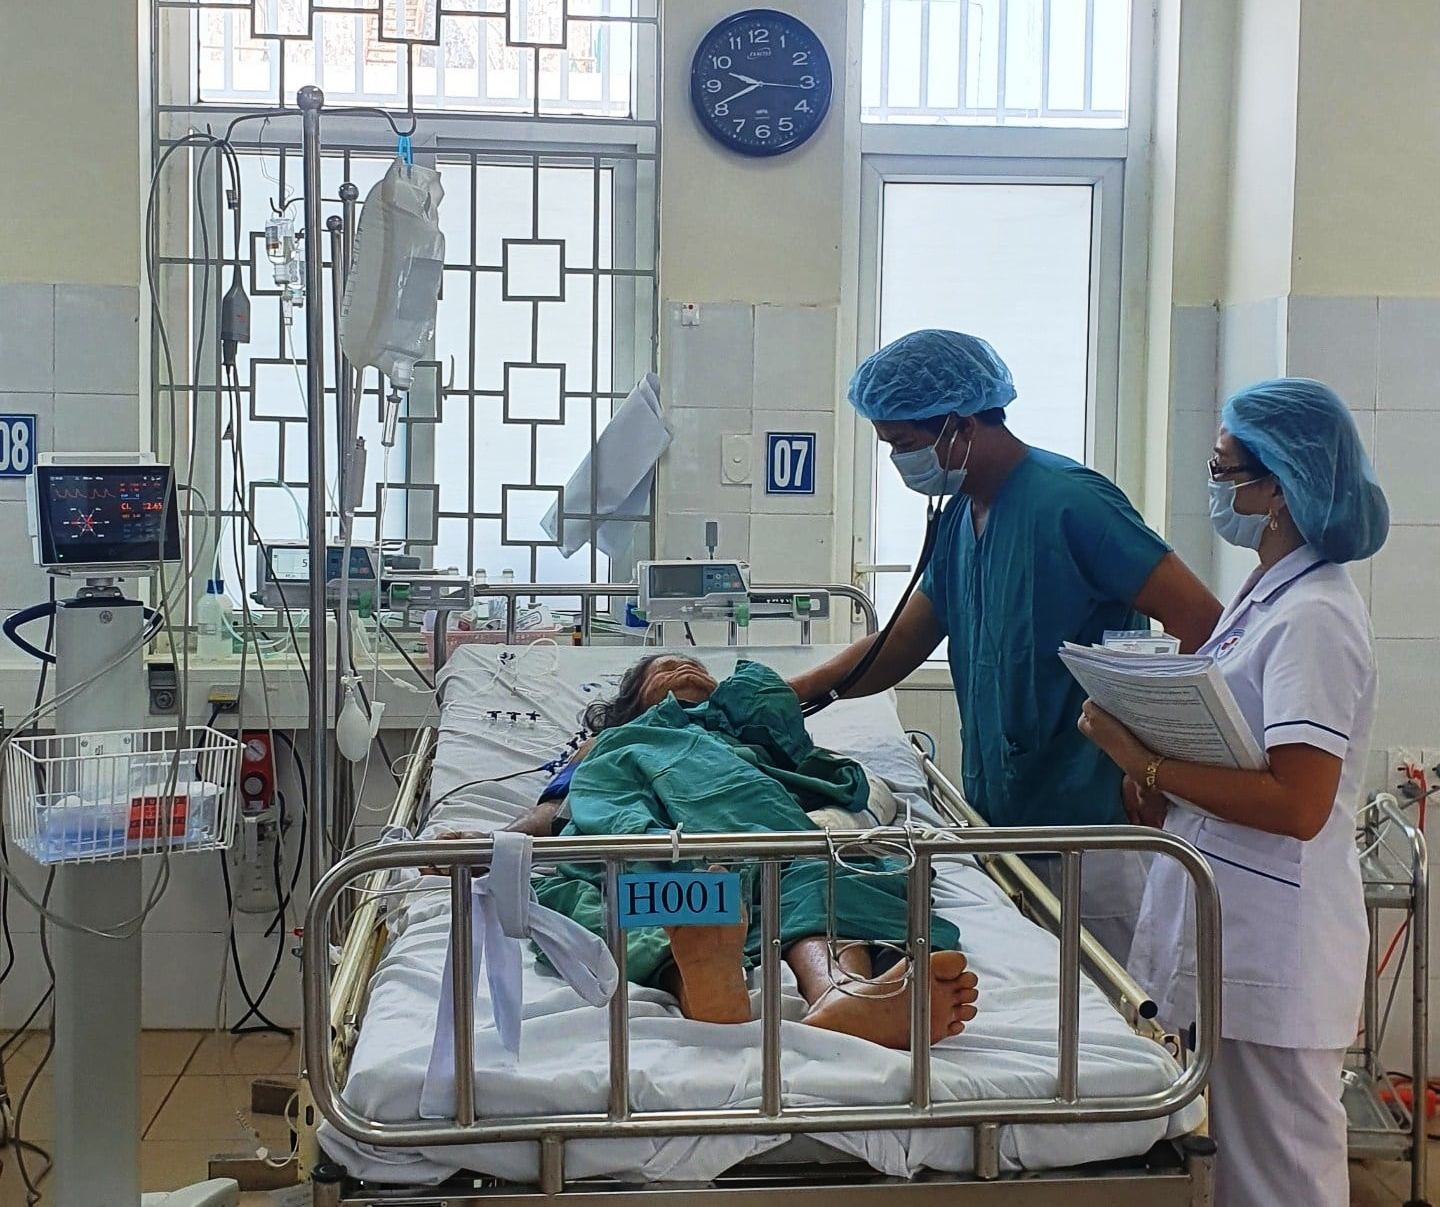 Dù đã có nhiều nỗ lực nhưng ngành y tế Quảng Ngãi vẫn chưa đáp ứng nhu cầu khám chữa bệnh ngày càng cao của người dân. Ảnh: Bệnh viện đa khoa tỉnh Quảng Ngãi.